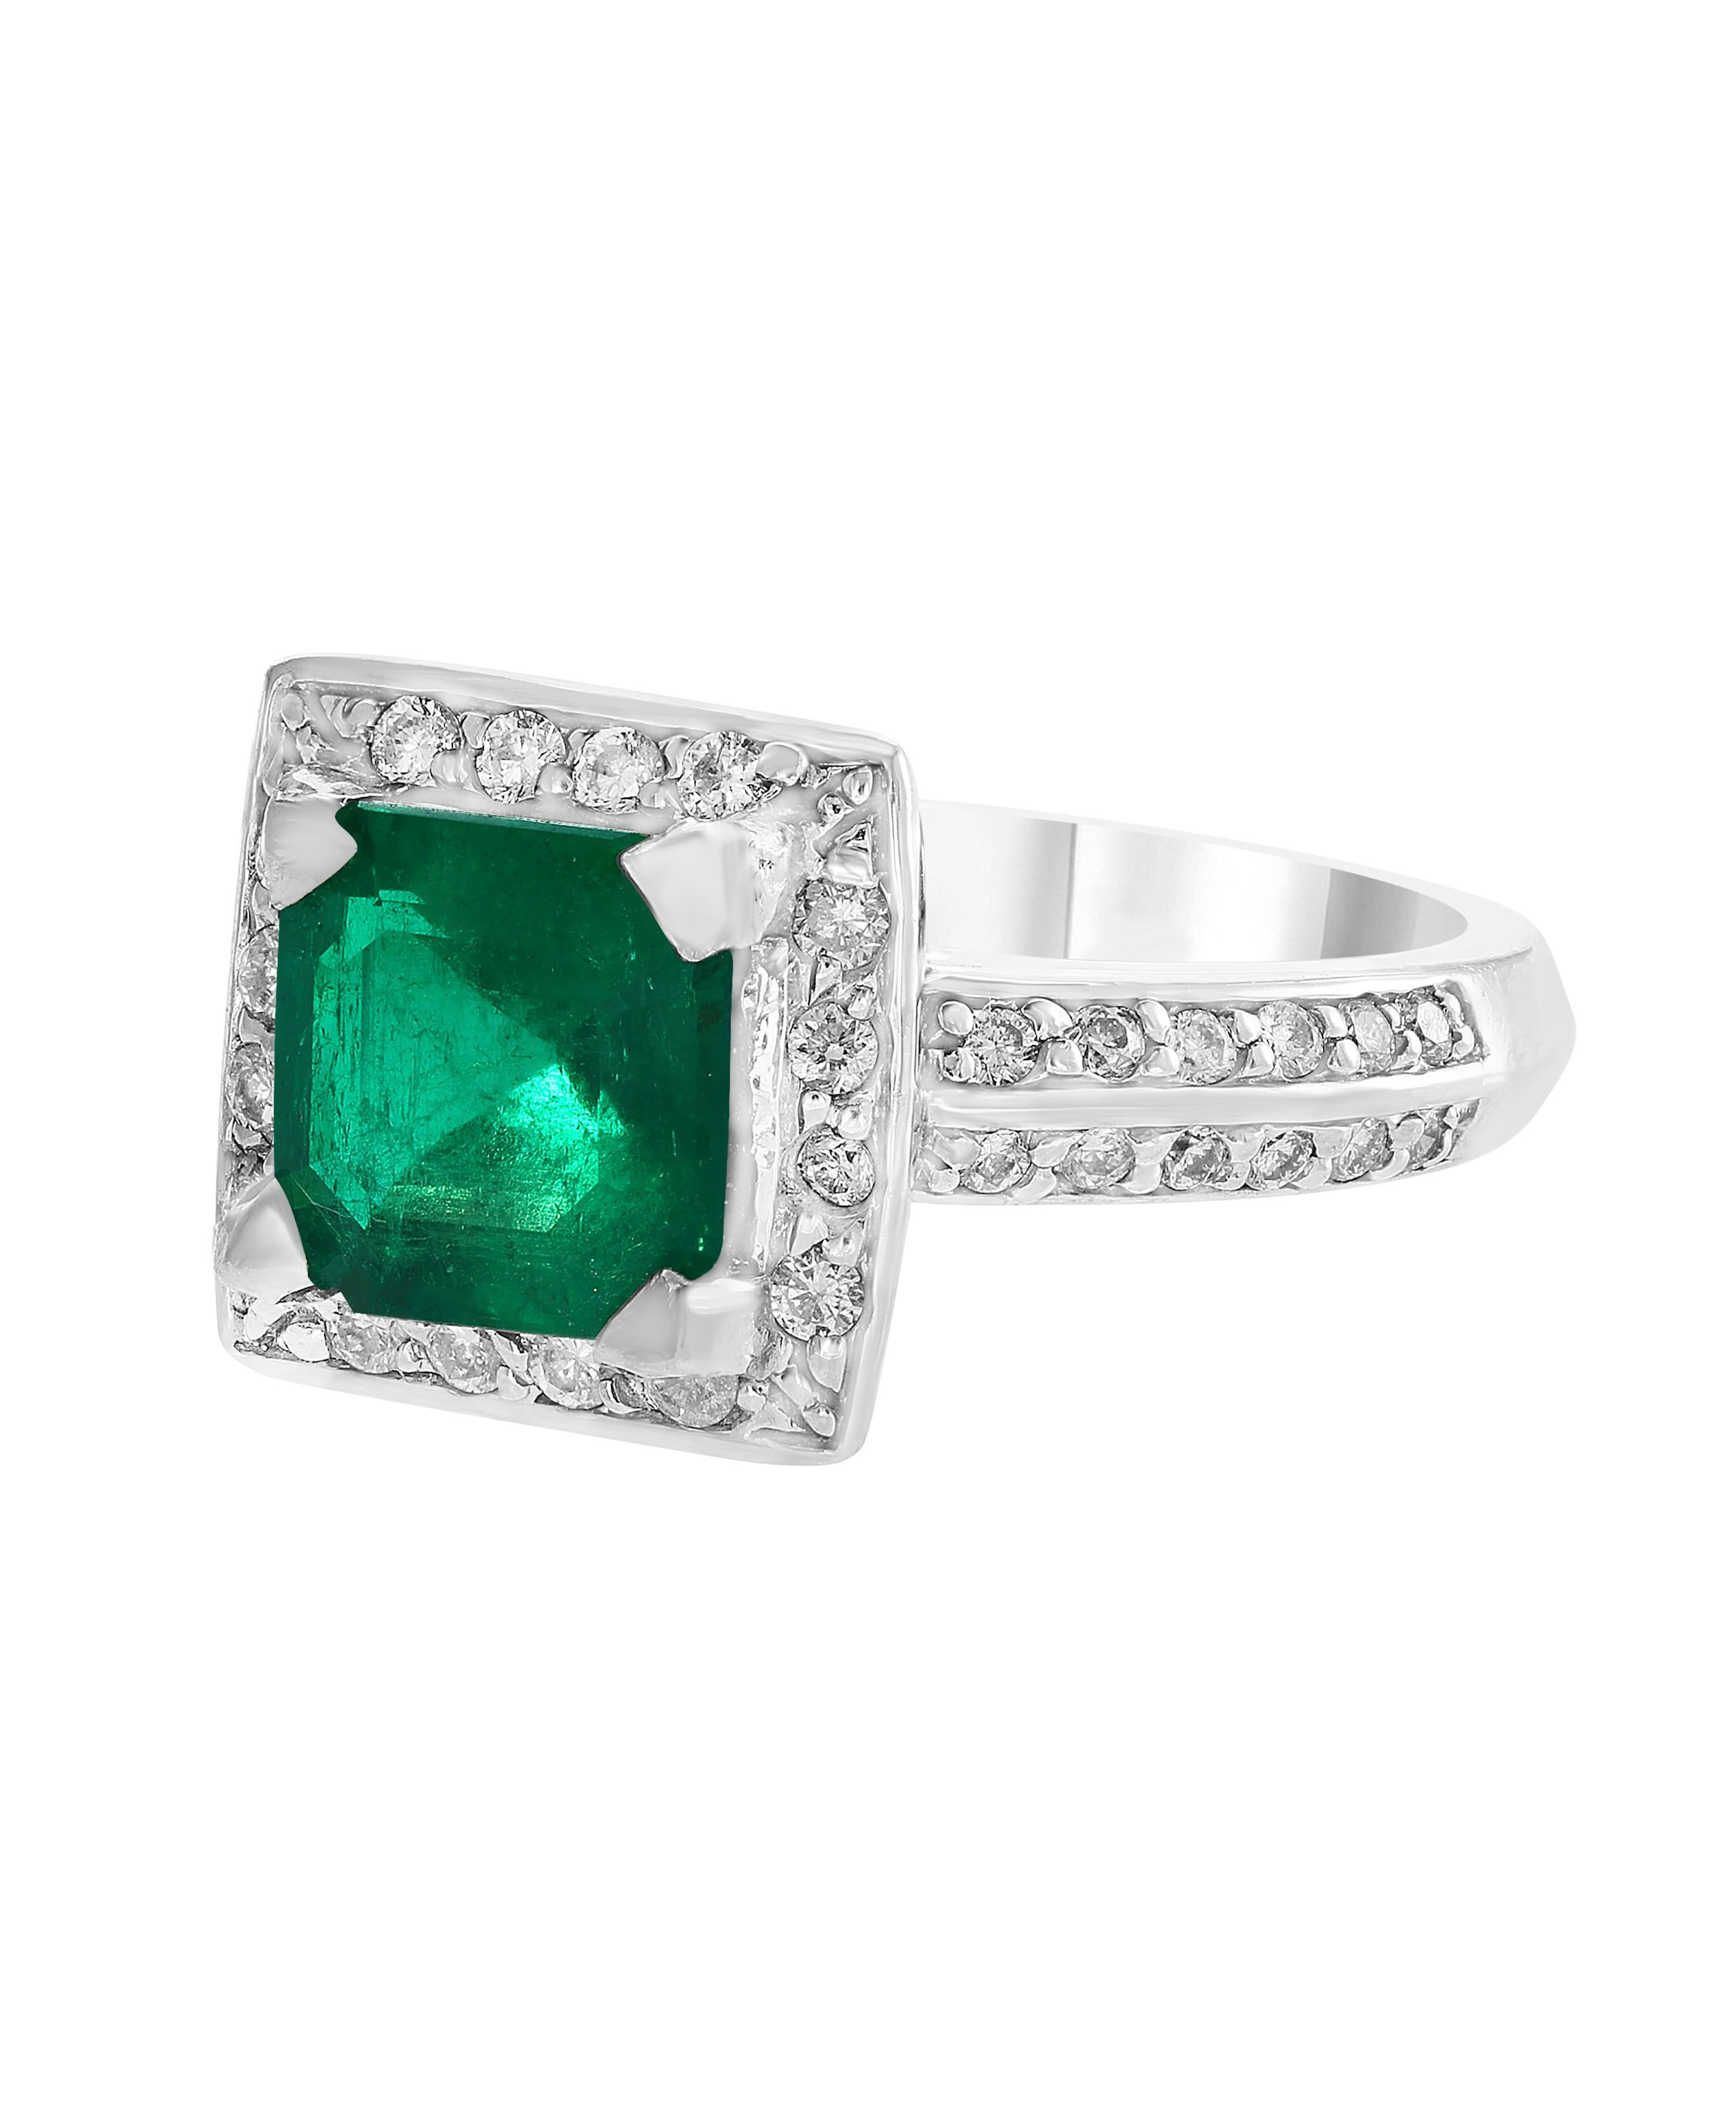 2.8 carat emerald cut diamond